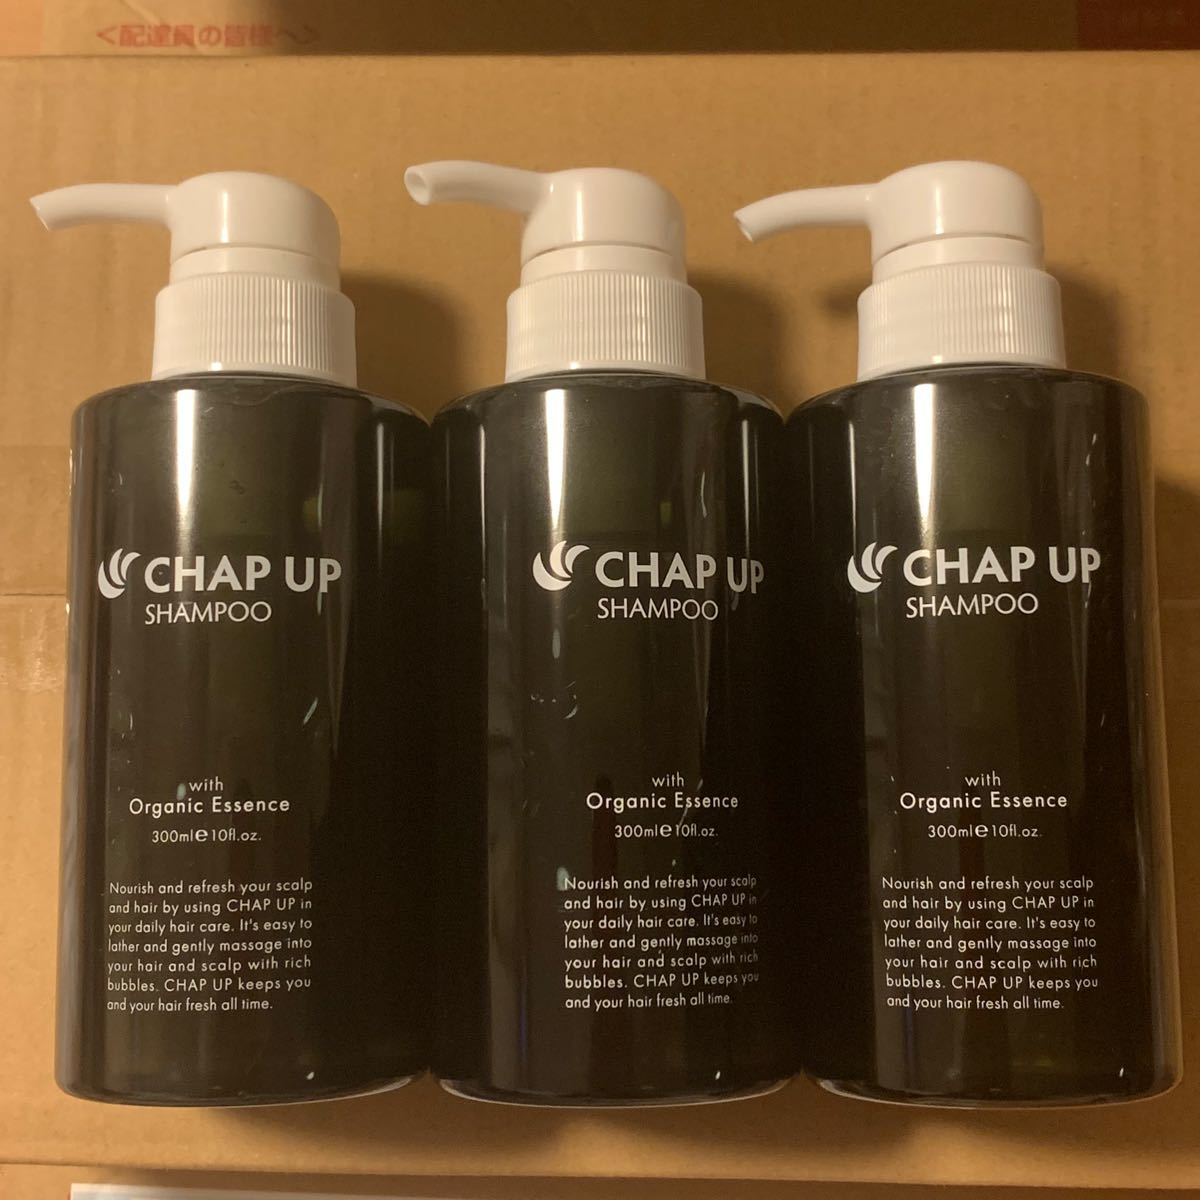 CHAP UP シャンプー 3本セット チャップアップ スカルプシャンプー チャップアップシャンプー